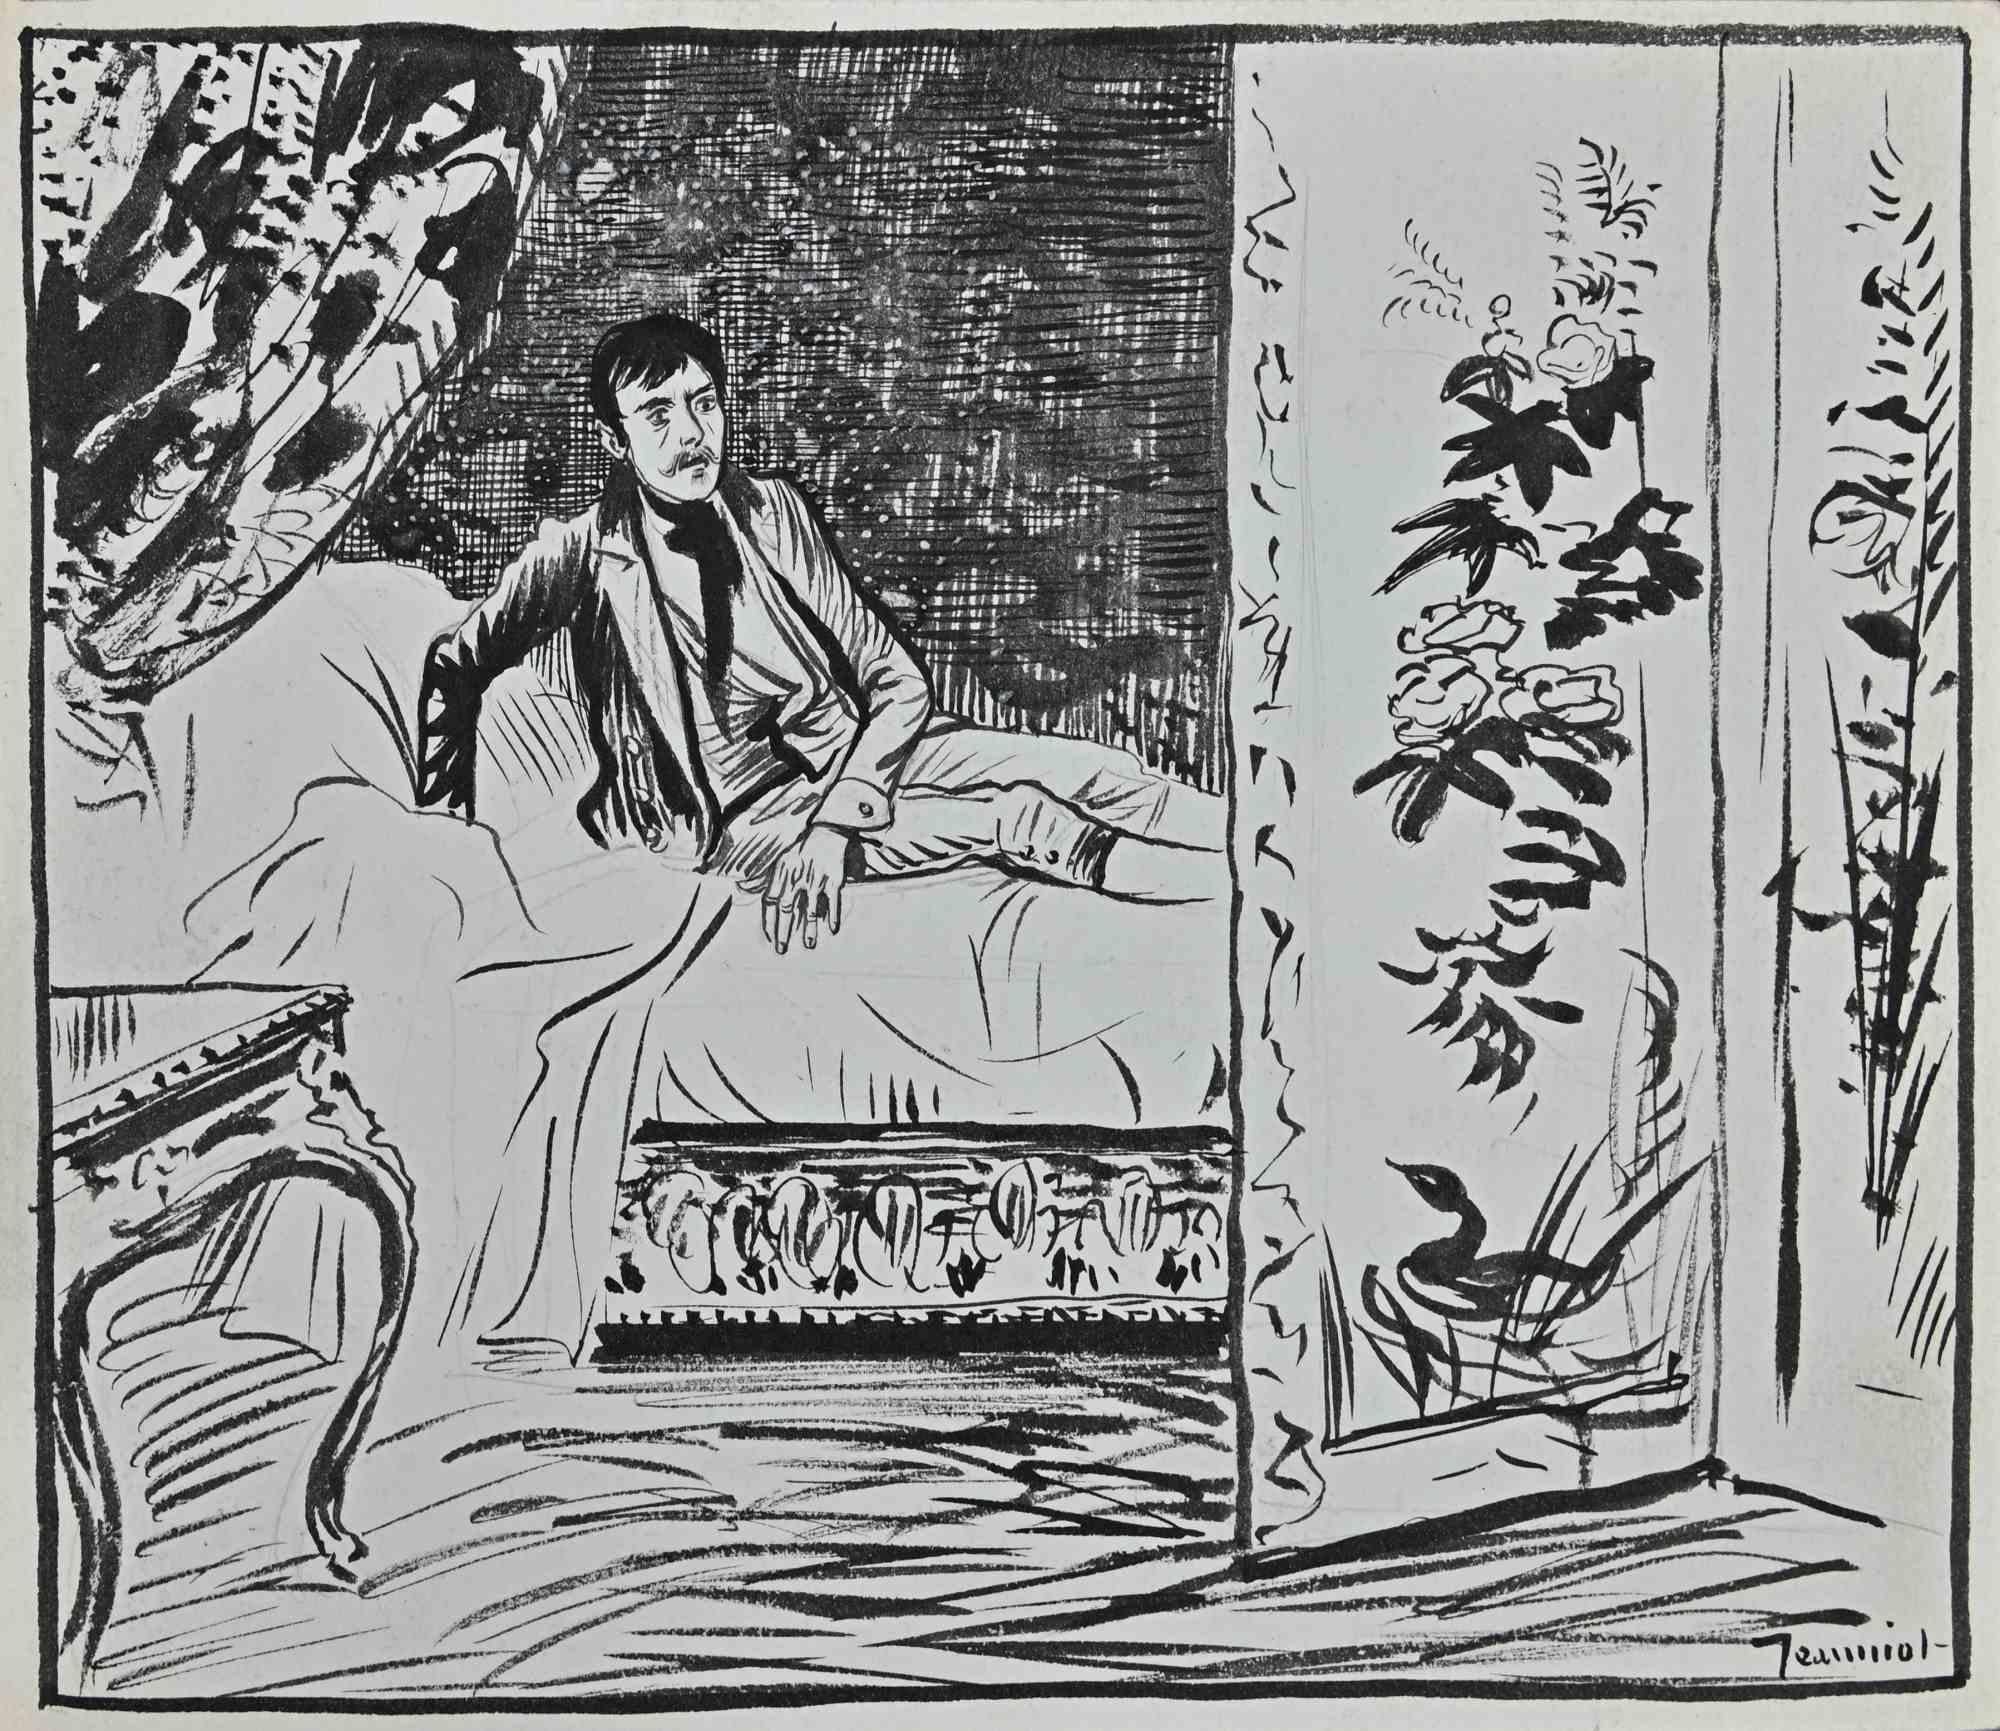 Der Mensch ist eine Original-Porzellan-Tuschezeichnung des Malers Pierre Georges Jeanniot (1848-1934).

Rechts unten handsigniert.

Gute Bedingungen.

Das Kunstwerk wird durch geschickte und schnelle Striche von Meisterhand dargestellt.